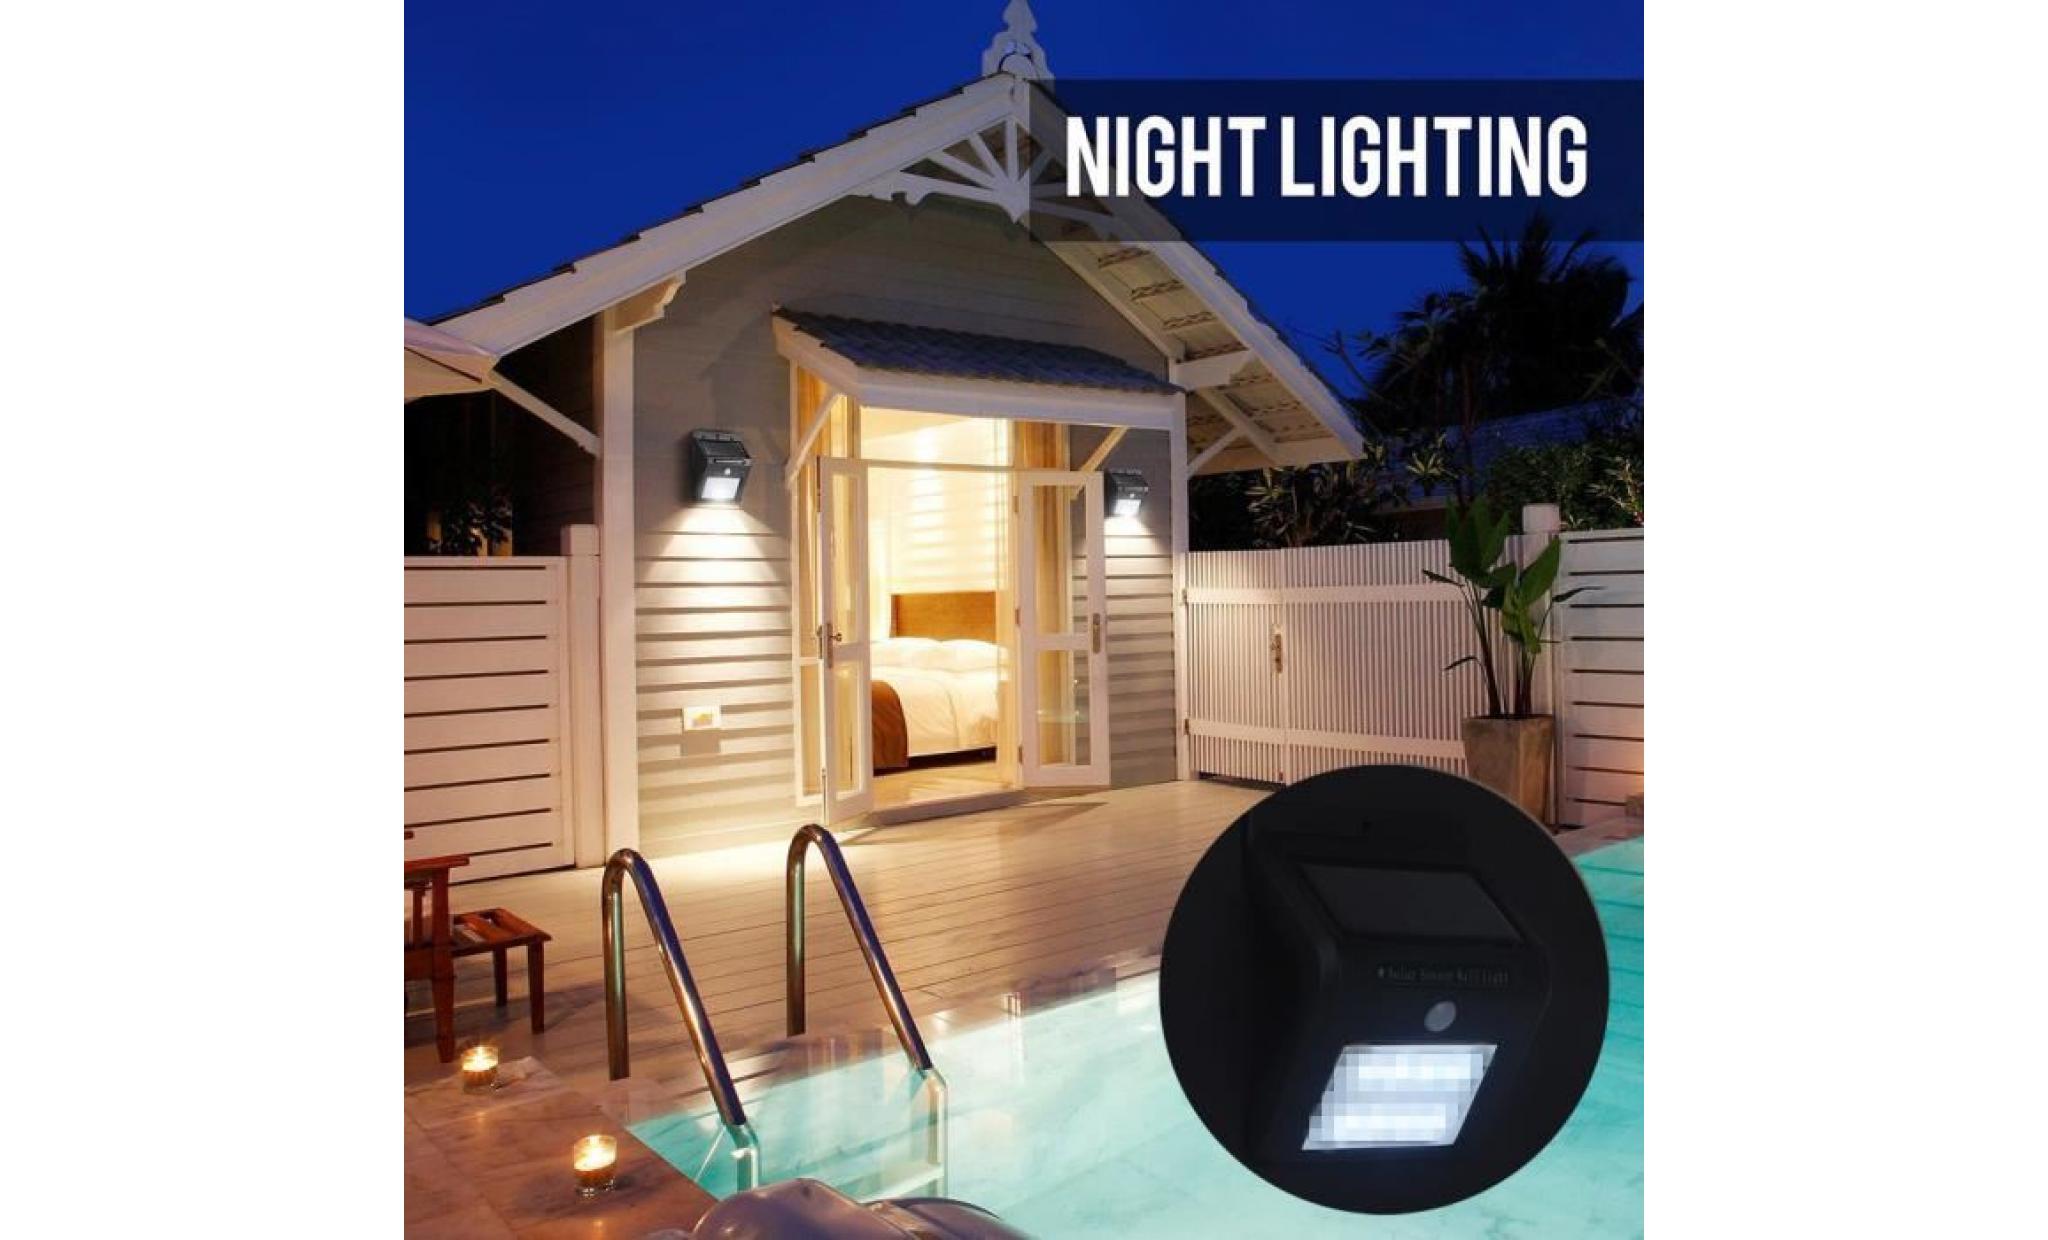 atian 16led pir motion sensor light control night light panneau solaire lampe lampe imperméable à l'eau pour garden path fence pas cher